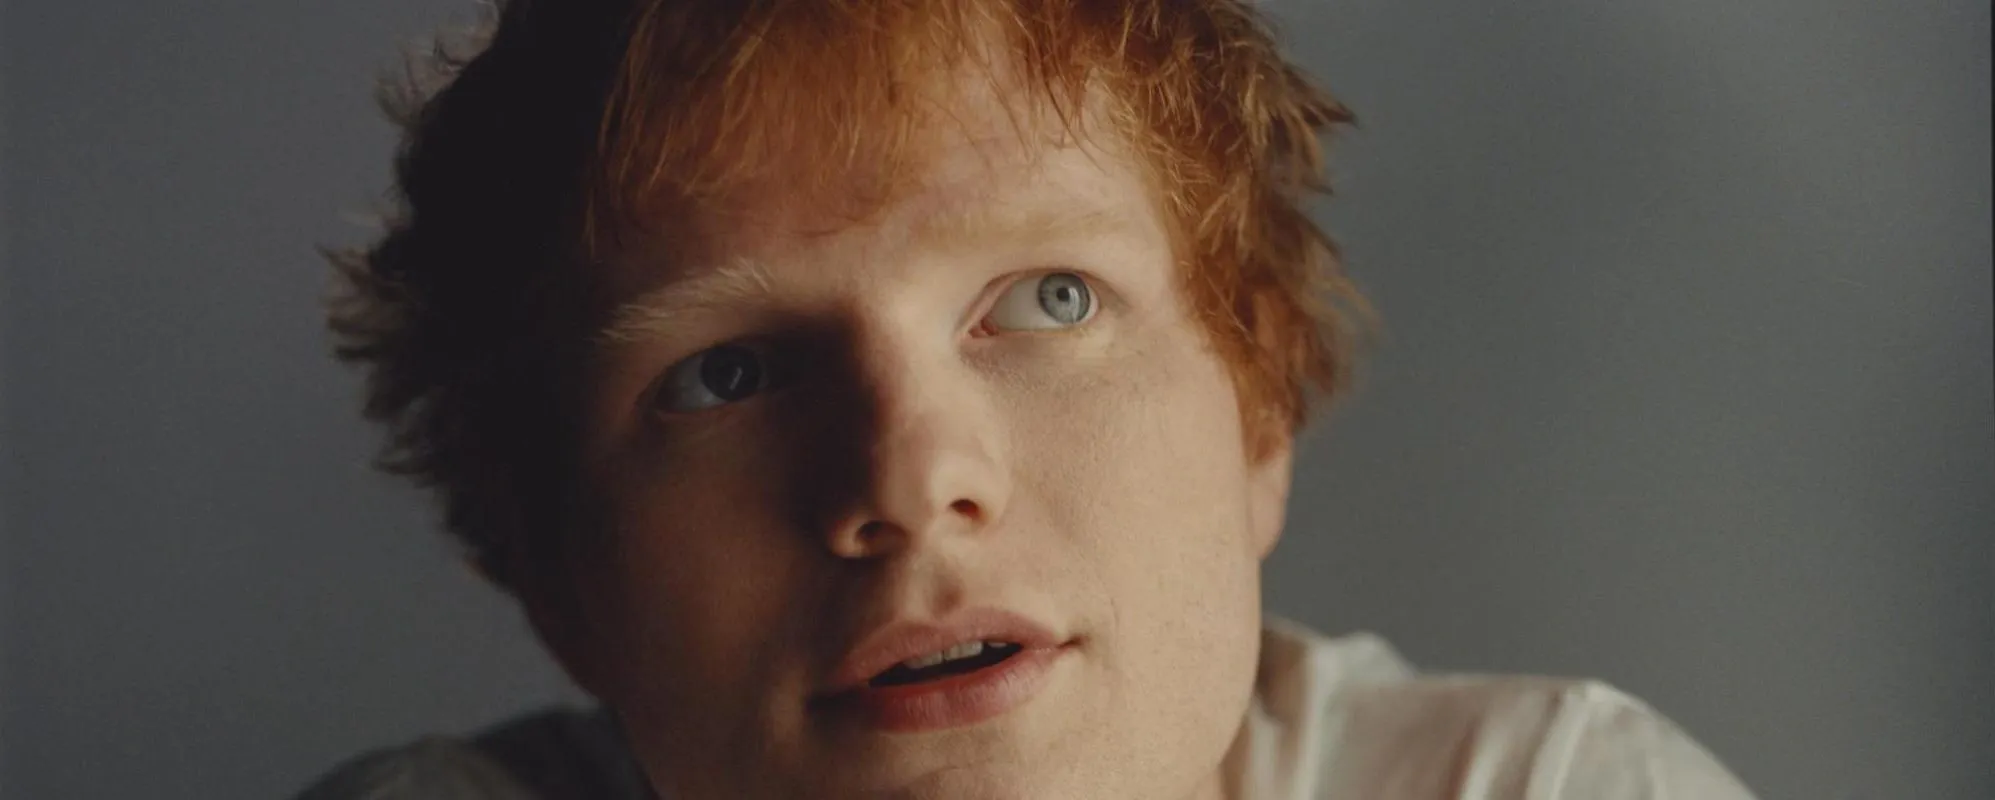 Ed Sheeran Reveals New Album ‘=’ Shares “Visiting Hours”